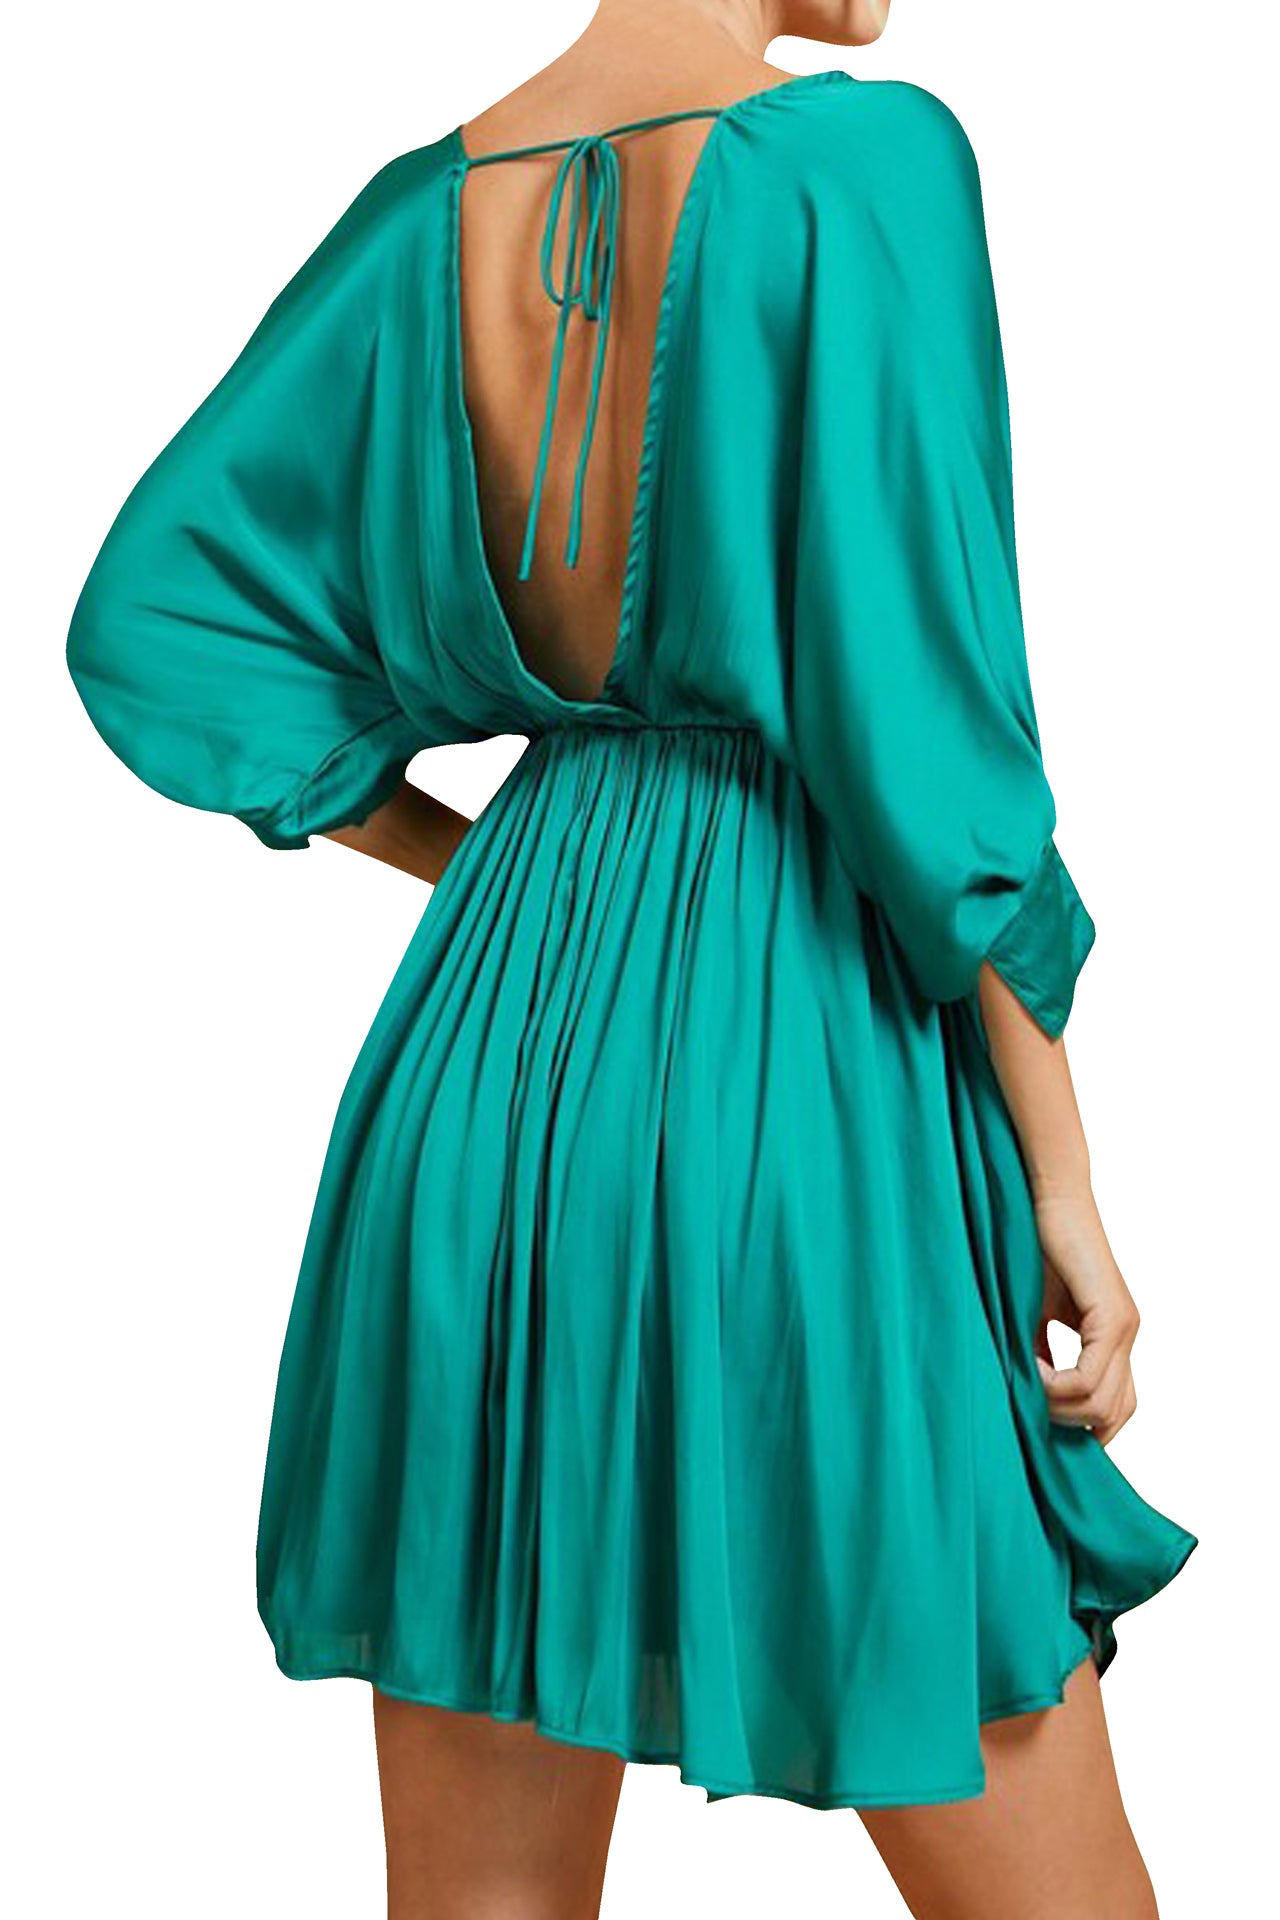 Green Women Short Dress